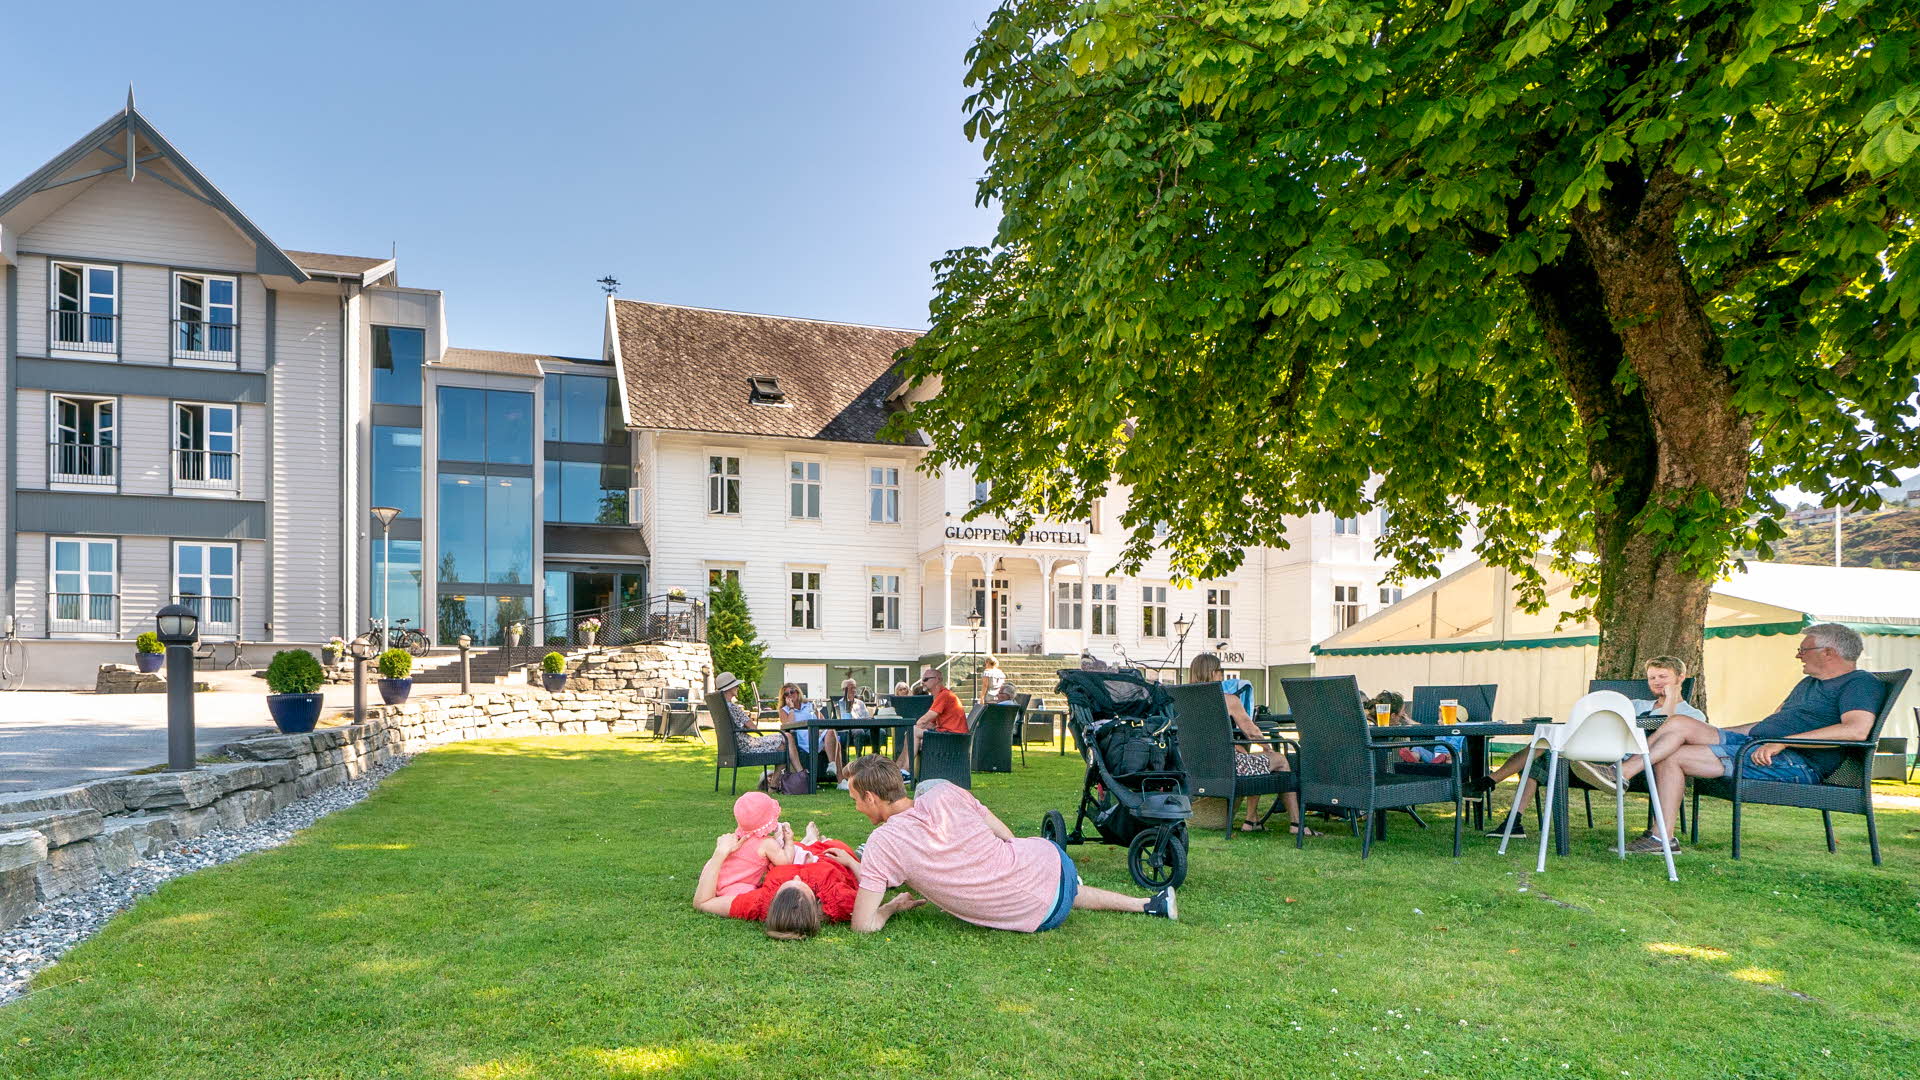 Gloppen Hotell sett fra hagen en sommerdag. En familie ligger på gresset, andre sitter i stoler på plenen. Stort grønt tre.